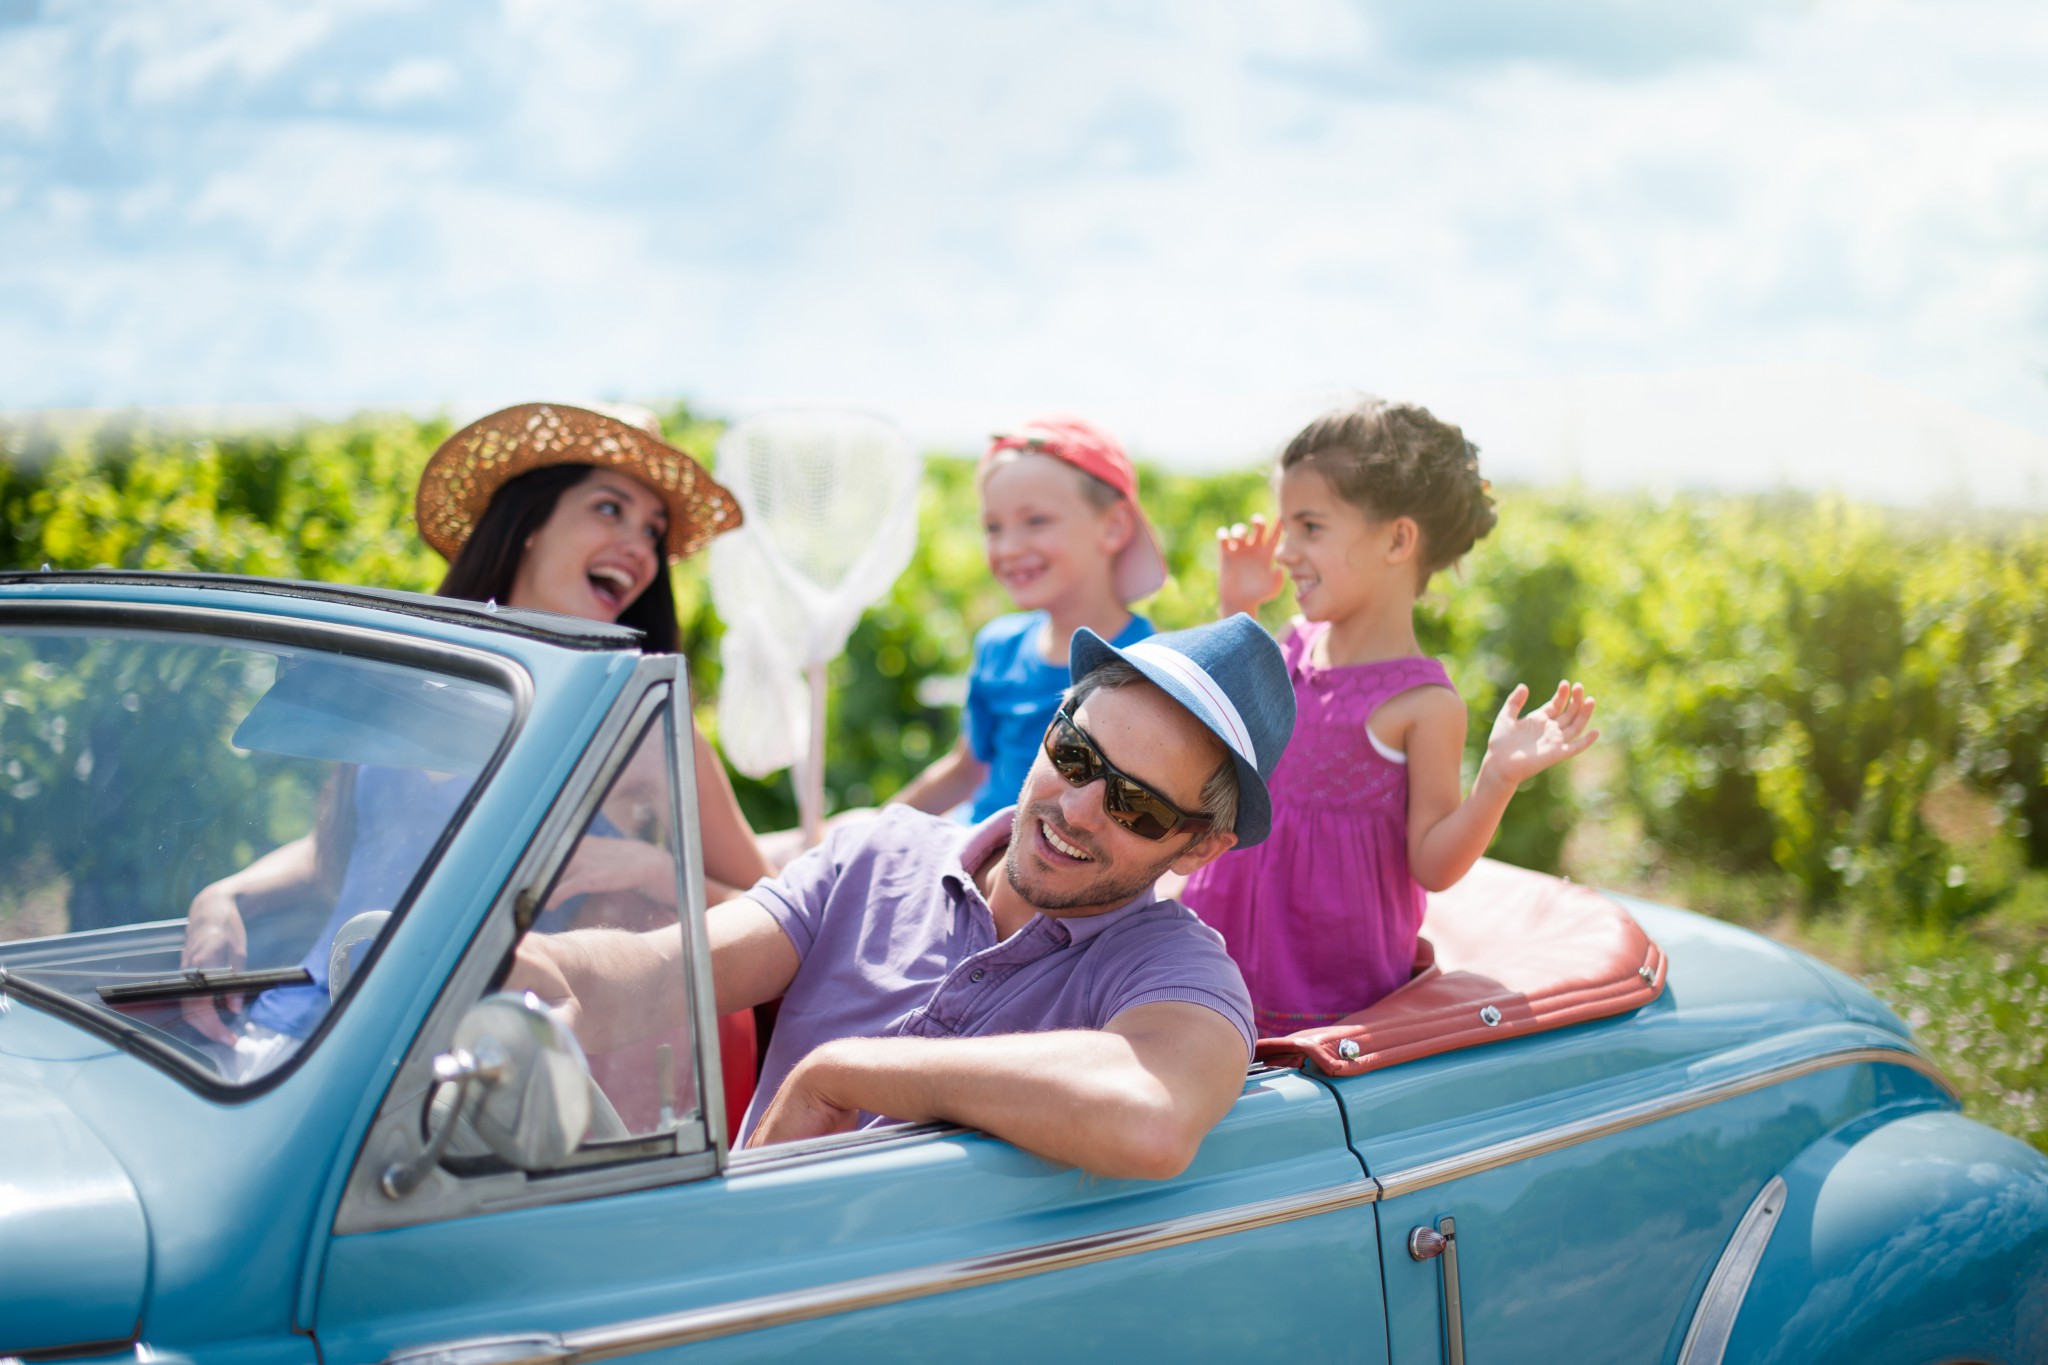 Vacances d’été : idées de séjours adaptés aux petits et aux enfants